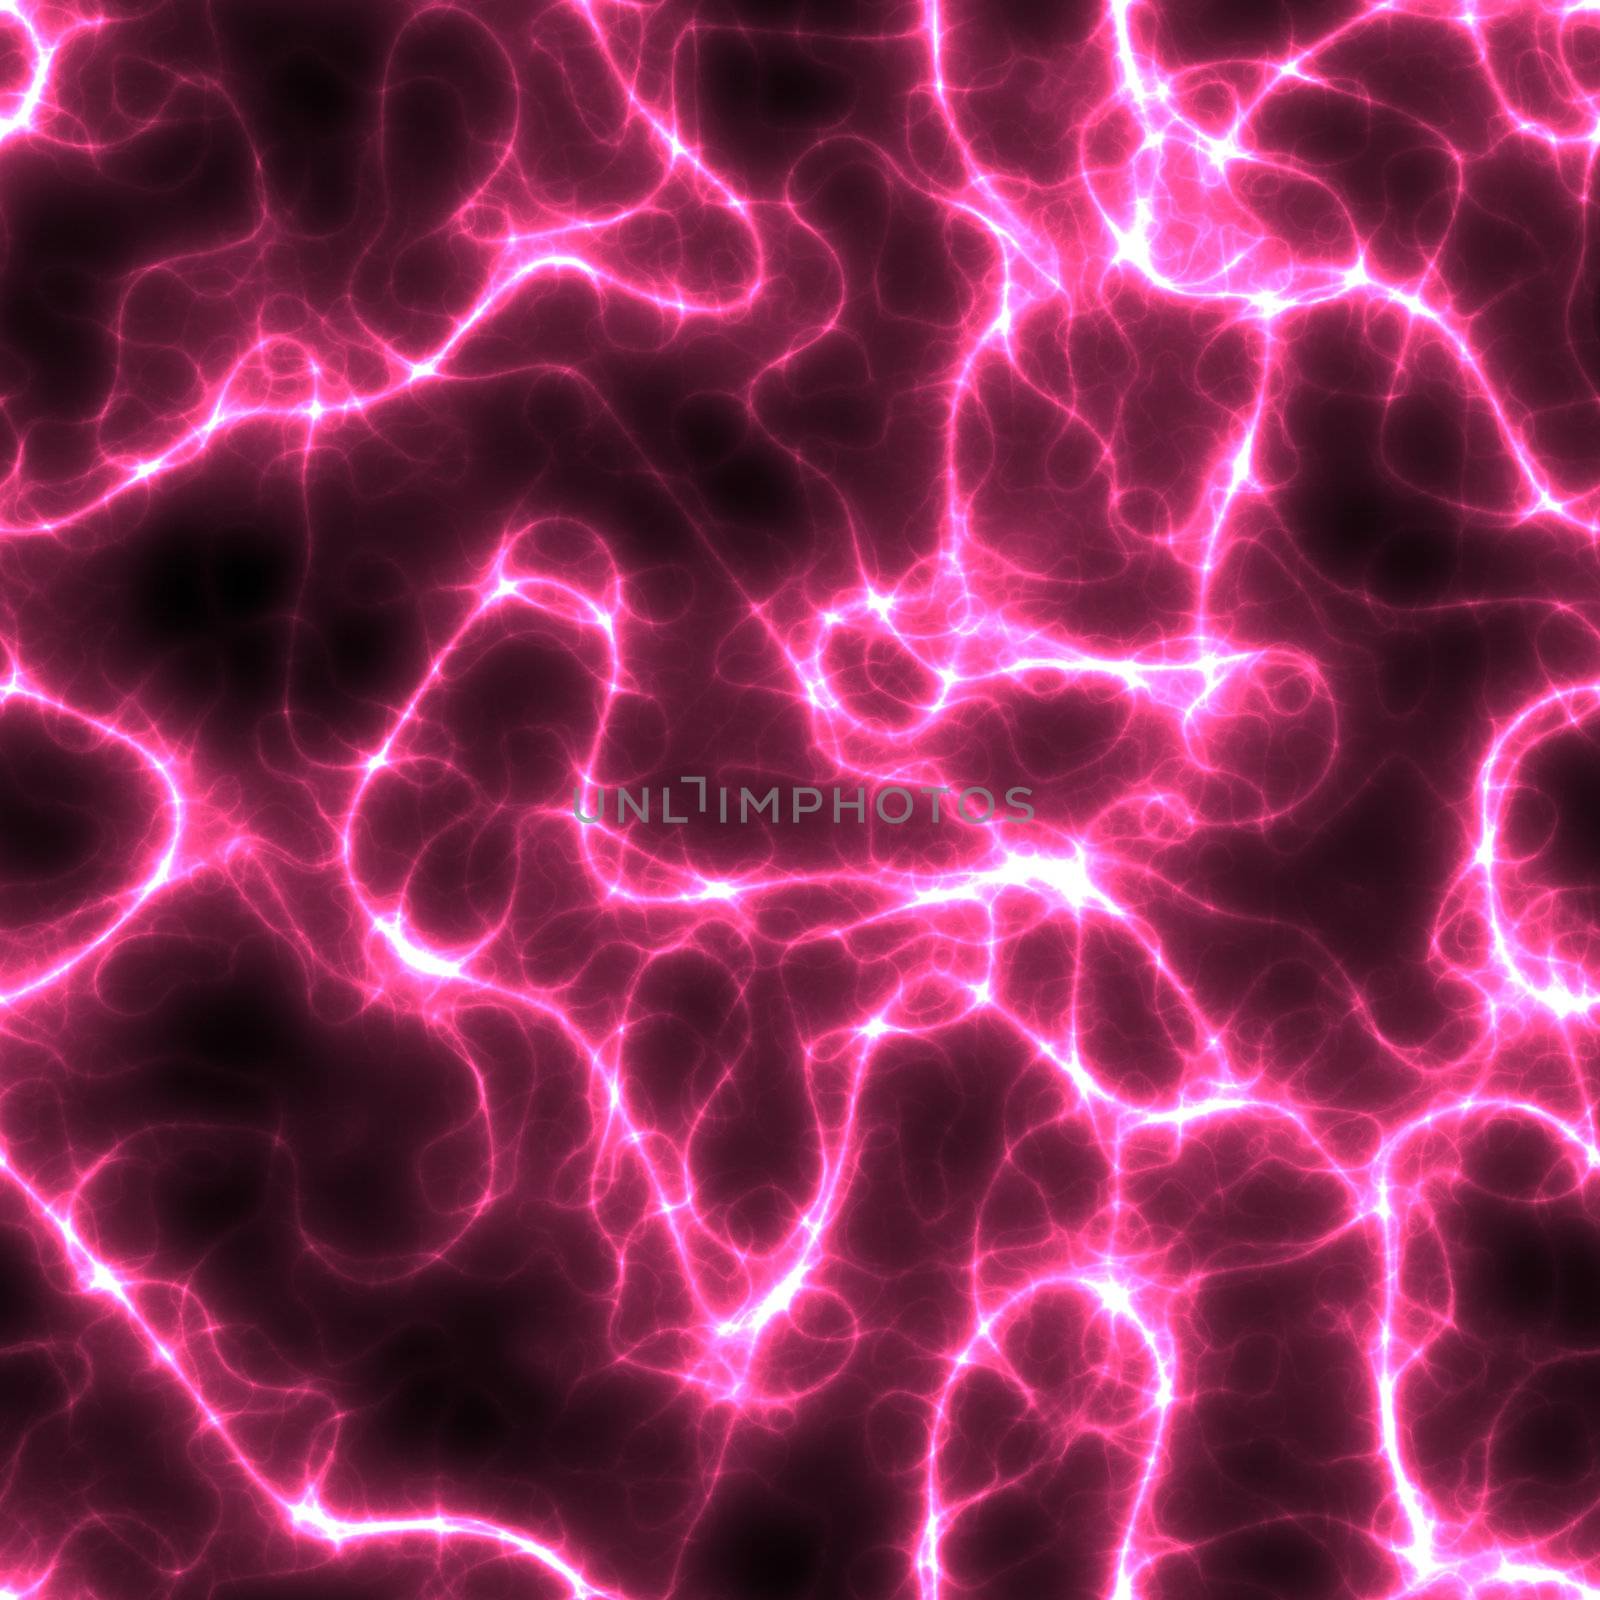 illustration showing pink lightnings over a black background